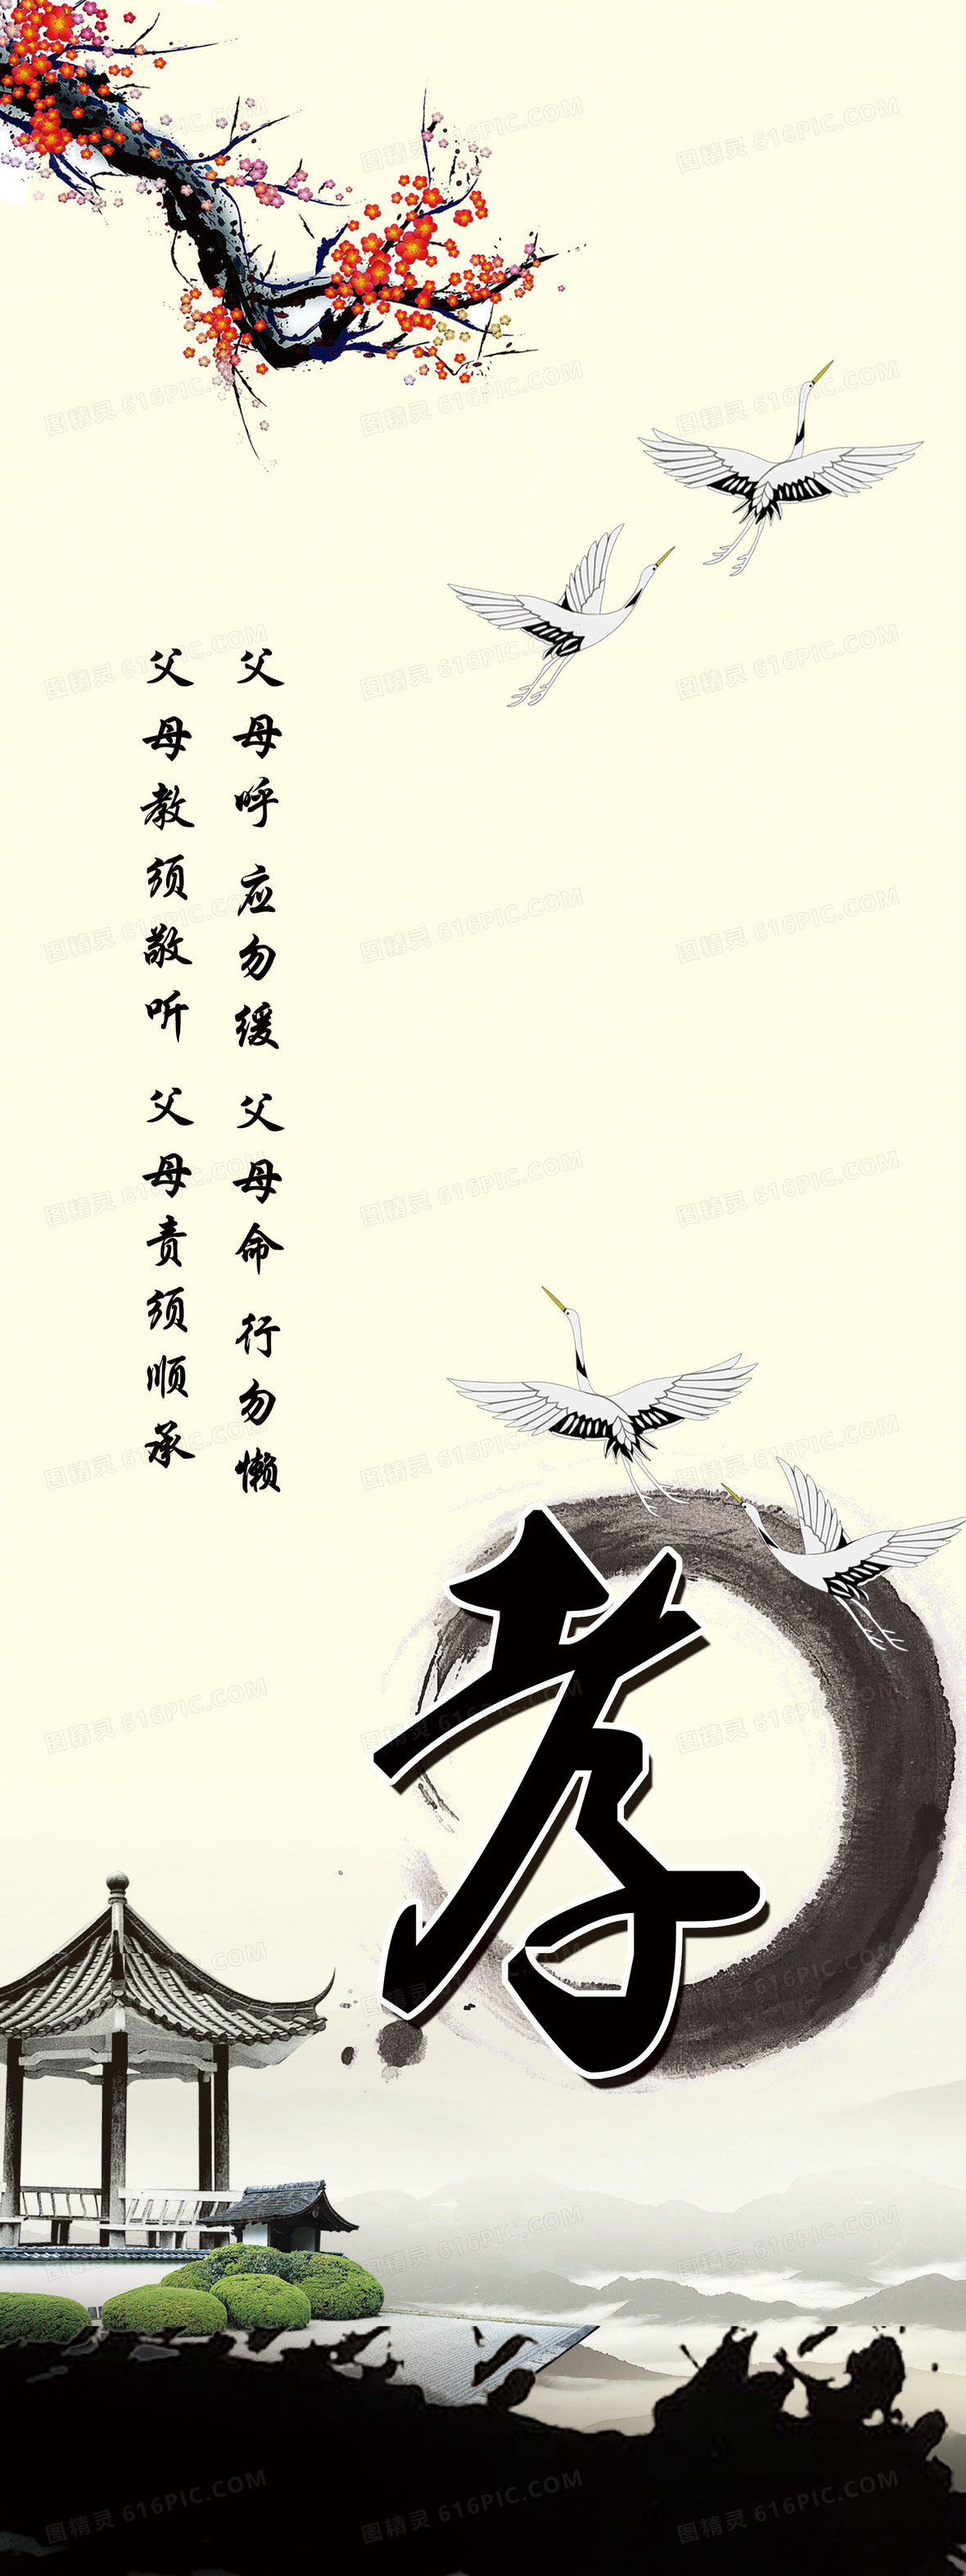 宣传海报端午节海报淘宝海报父亲节海报教育海报中国传统文化海报教育